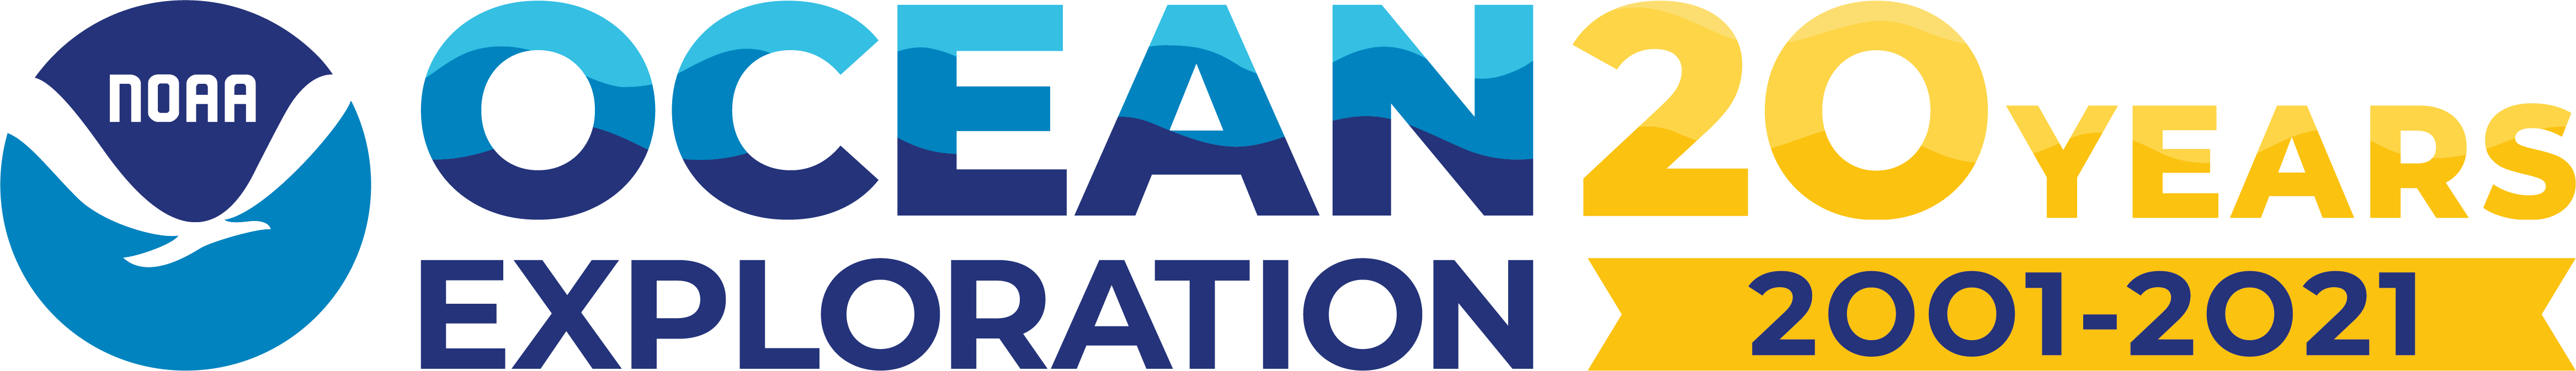 NOAA: OCean Exploration